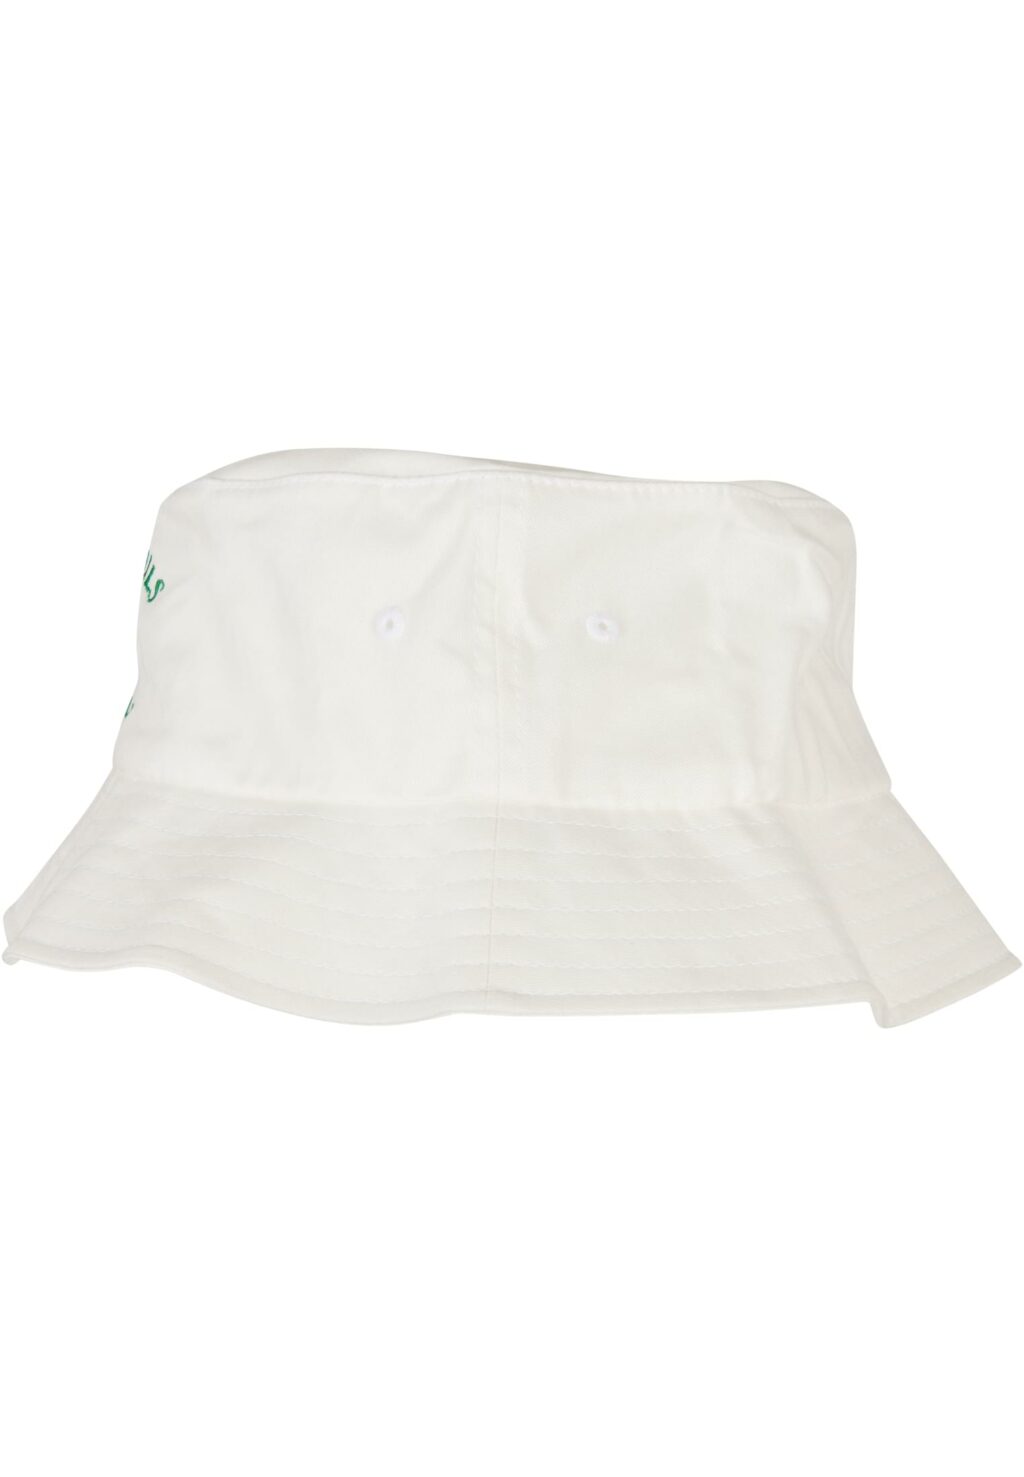 Beverly Hills Tennis Club Bucket Hat white one MT2266